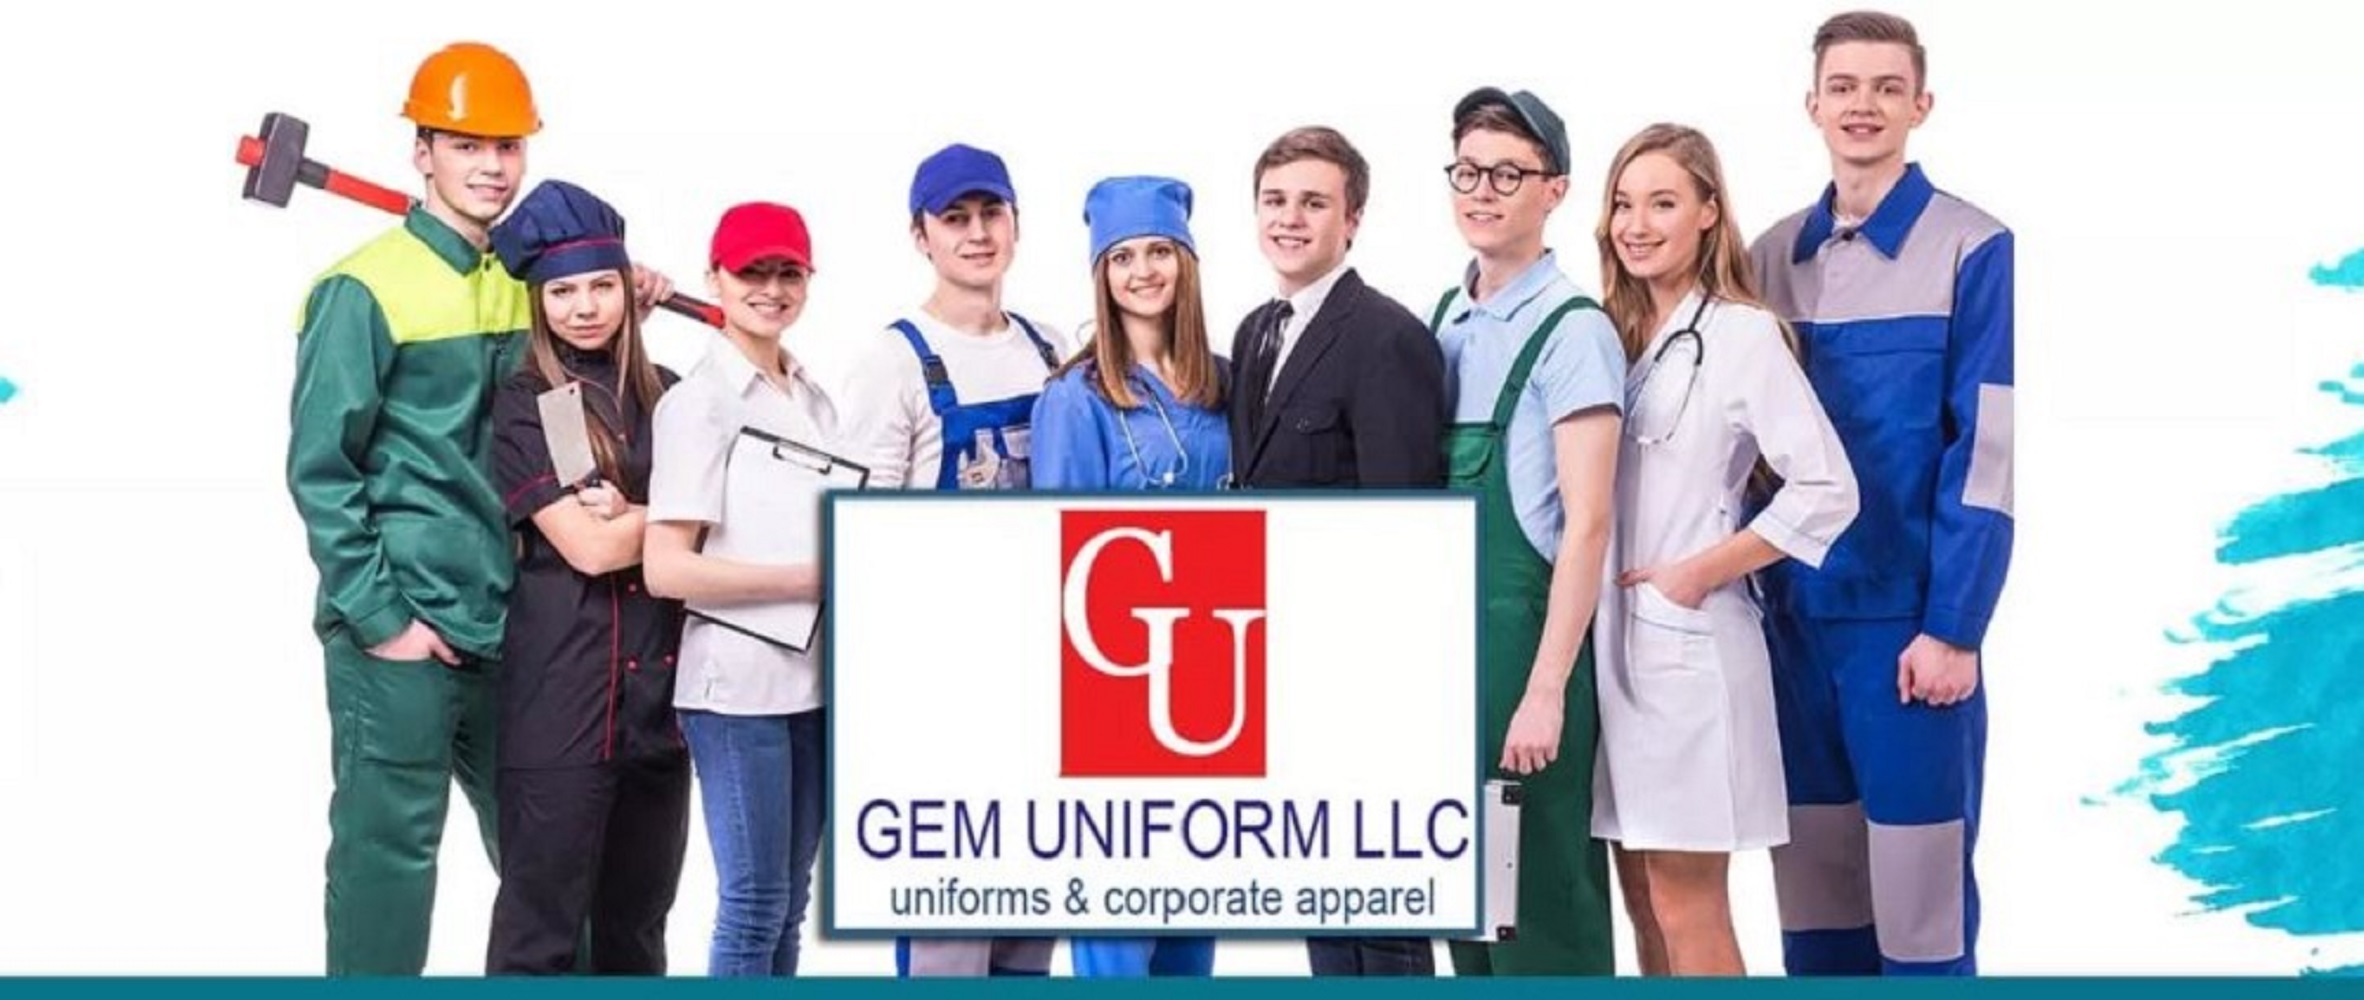 Gem Uniform LLC